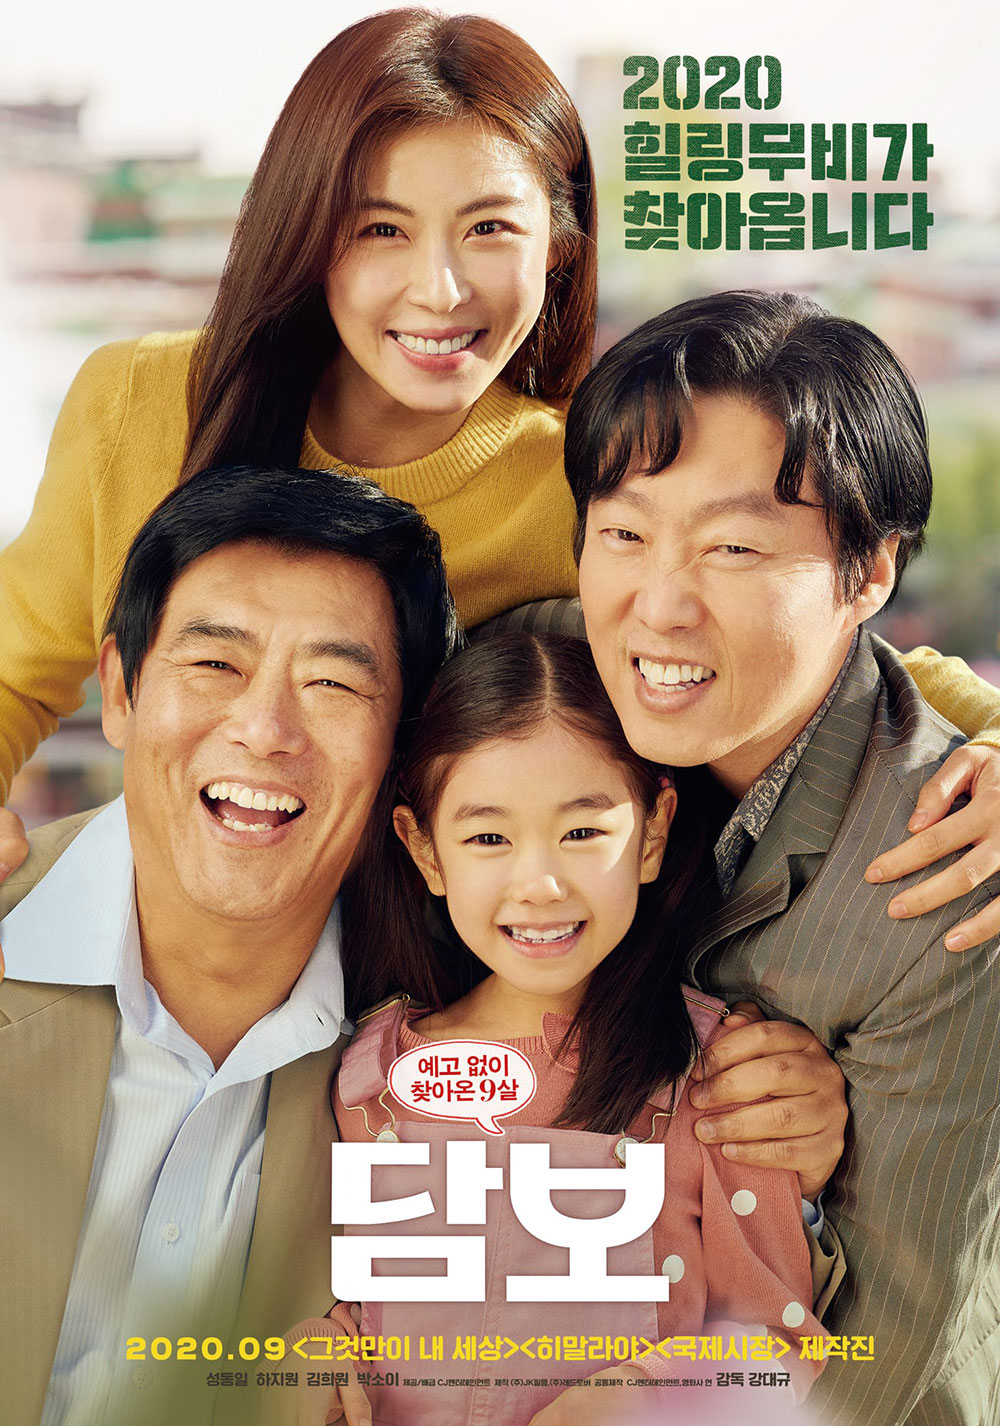 Phim của Ha Ji Won: Cục nợ hóa cục cưng - Pawn (2020)